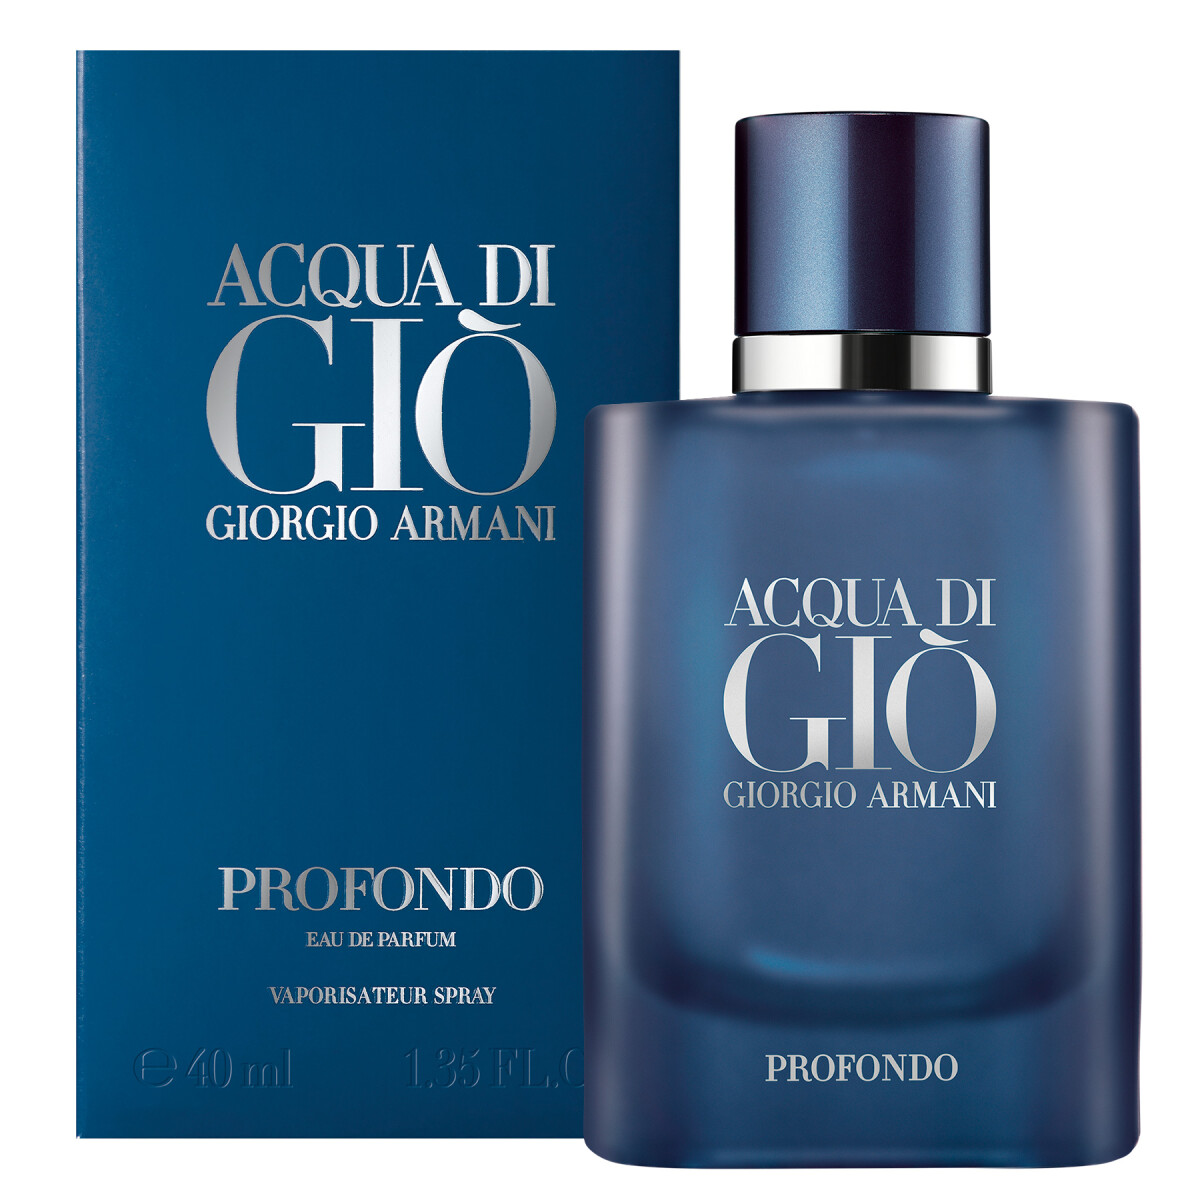 Perfume Acqua Di Gio Profondo Edp 40 Ml. — J.Saul